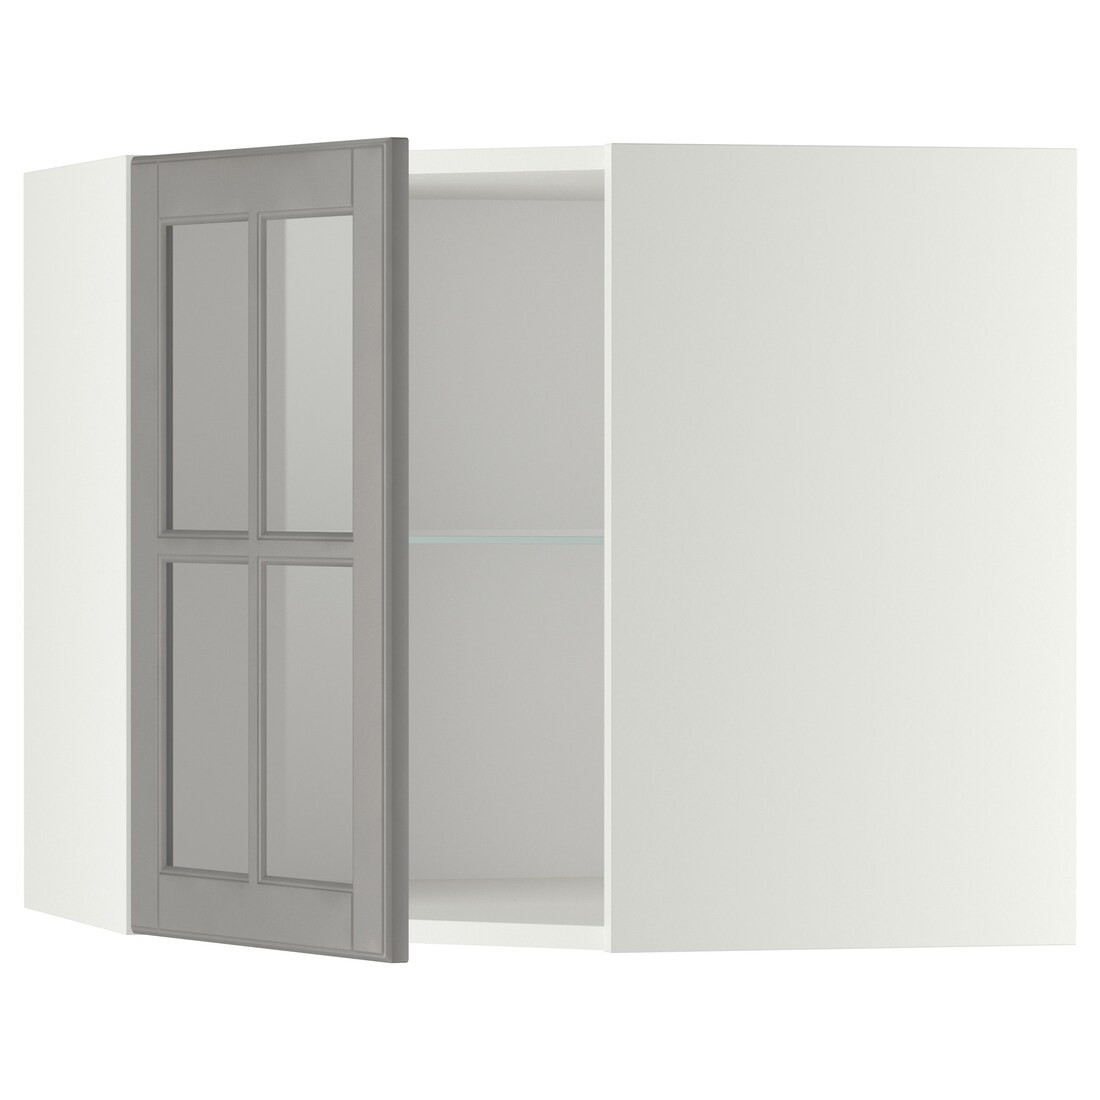 IKEA METOD МЕТОД Угловой настенный шкаф с полками / стеклянная дверь, белый / Bodbyn серый, 68x60 см 49394963 493.949.63